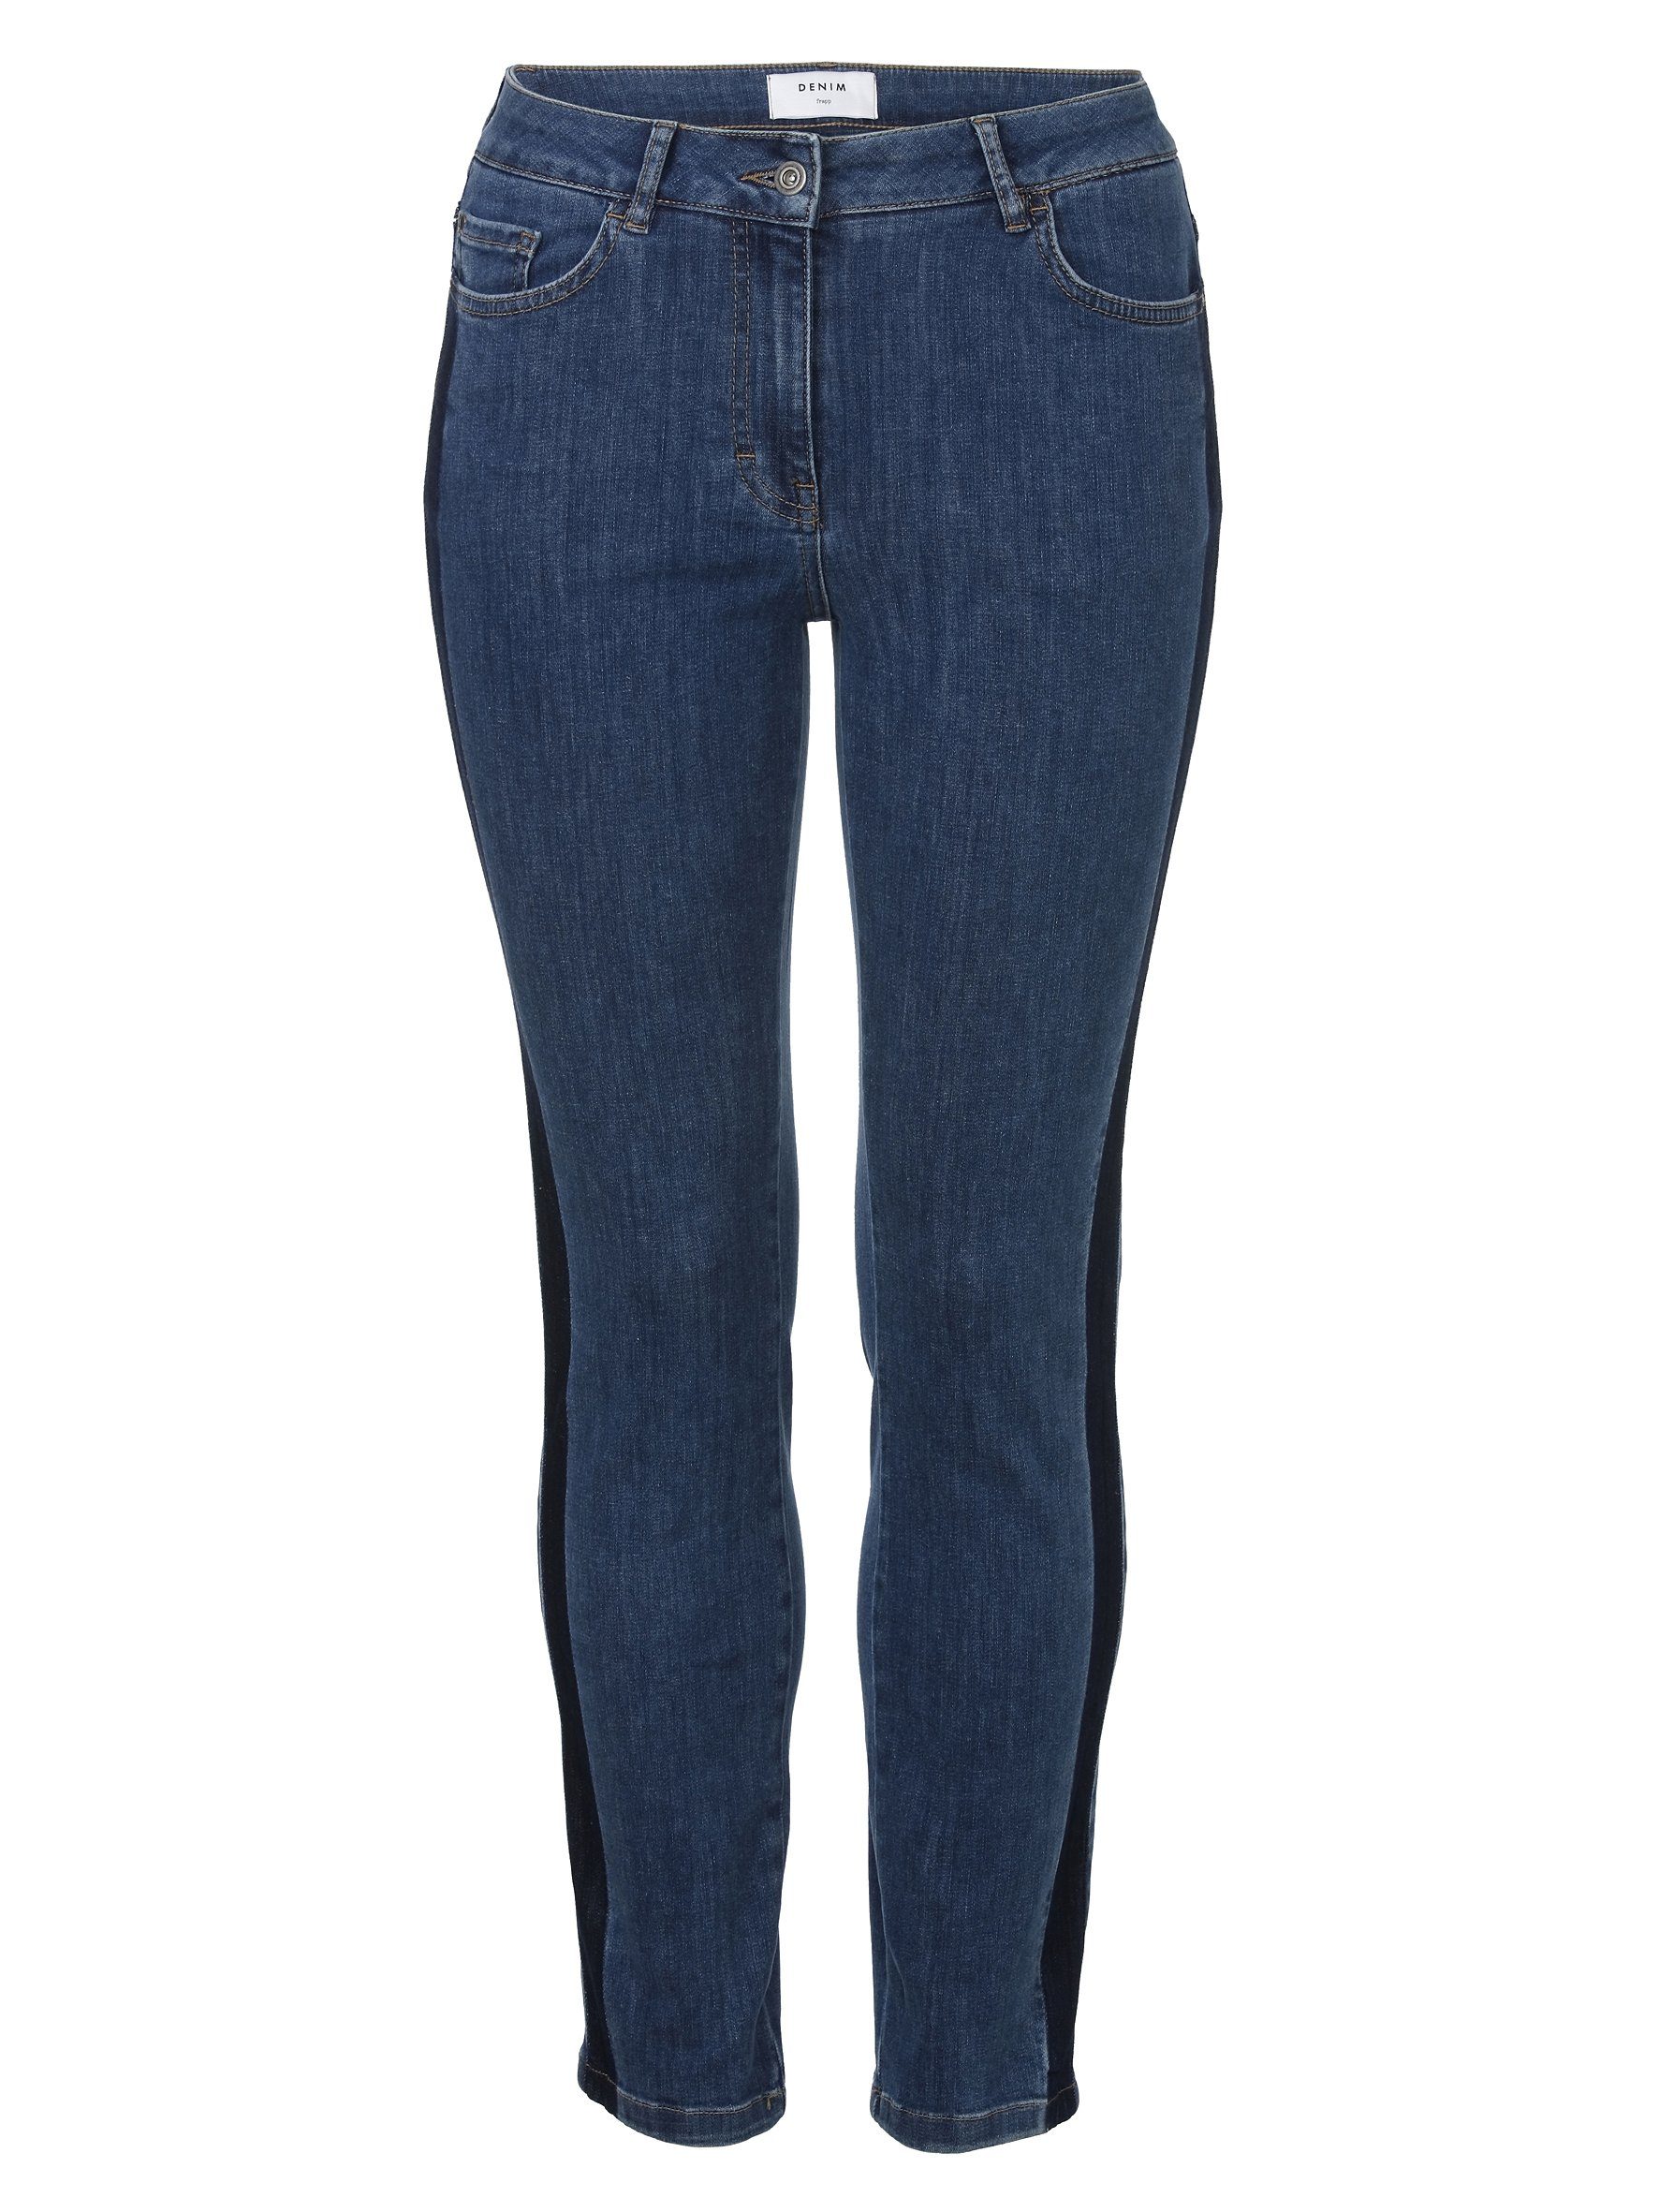 FRAPP 5-Pocket-Jeans | Skinny Jeans